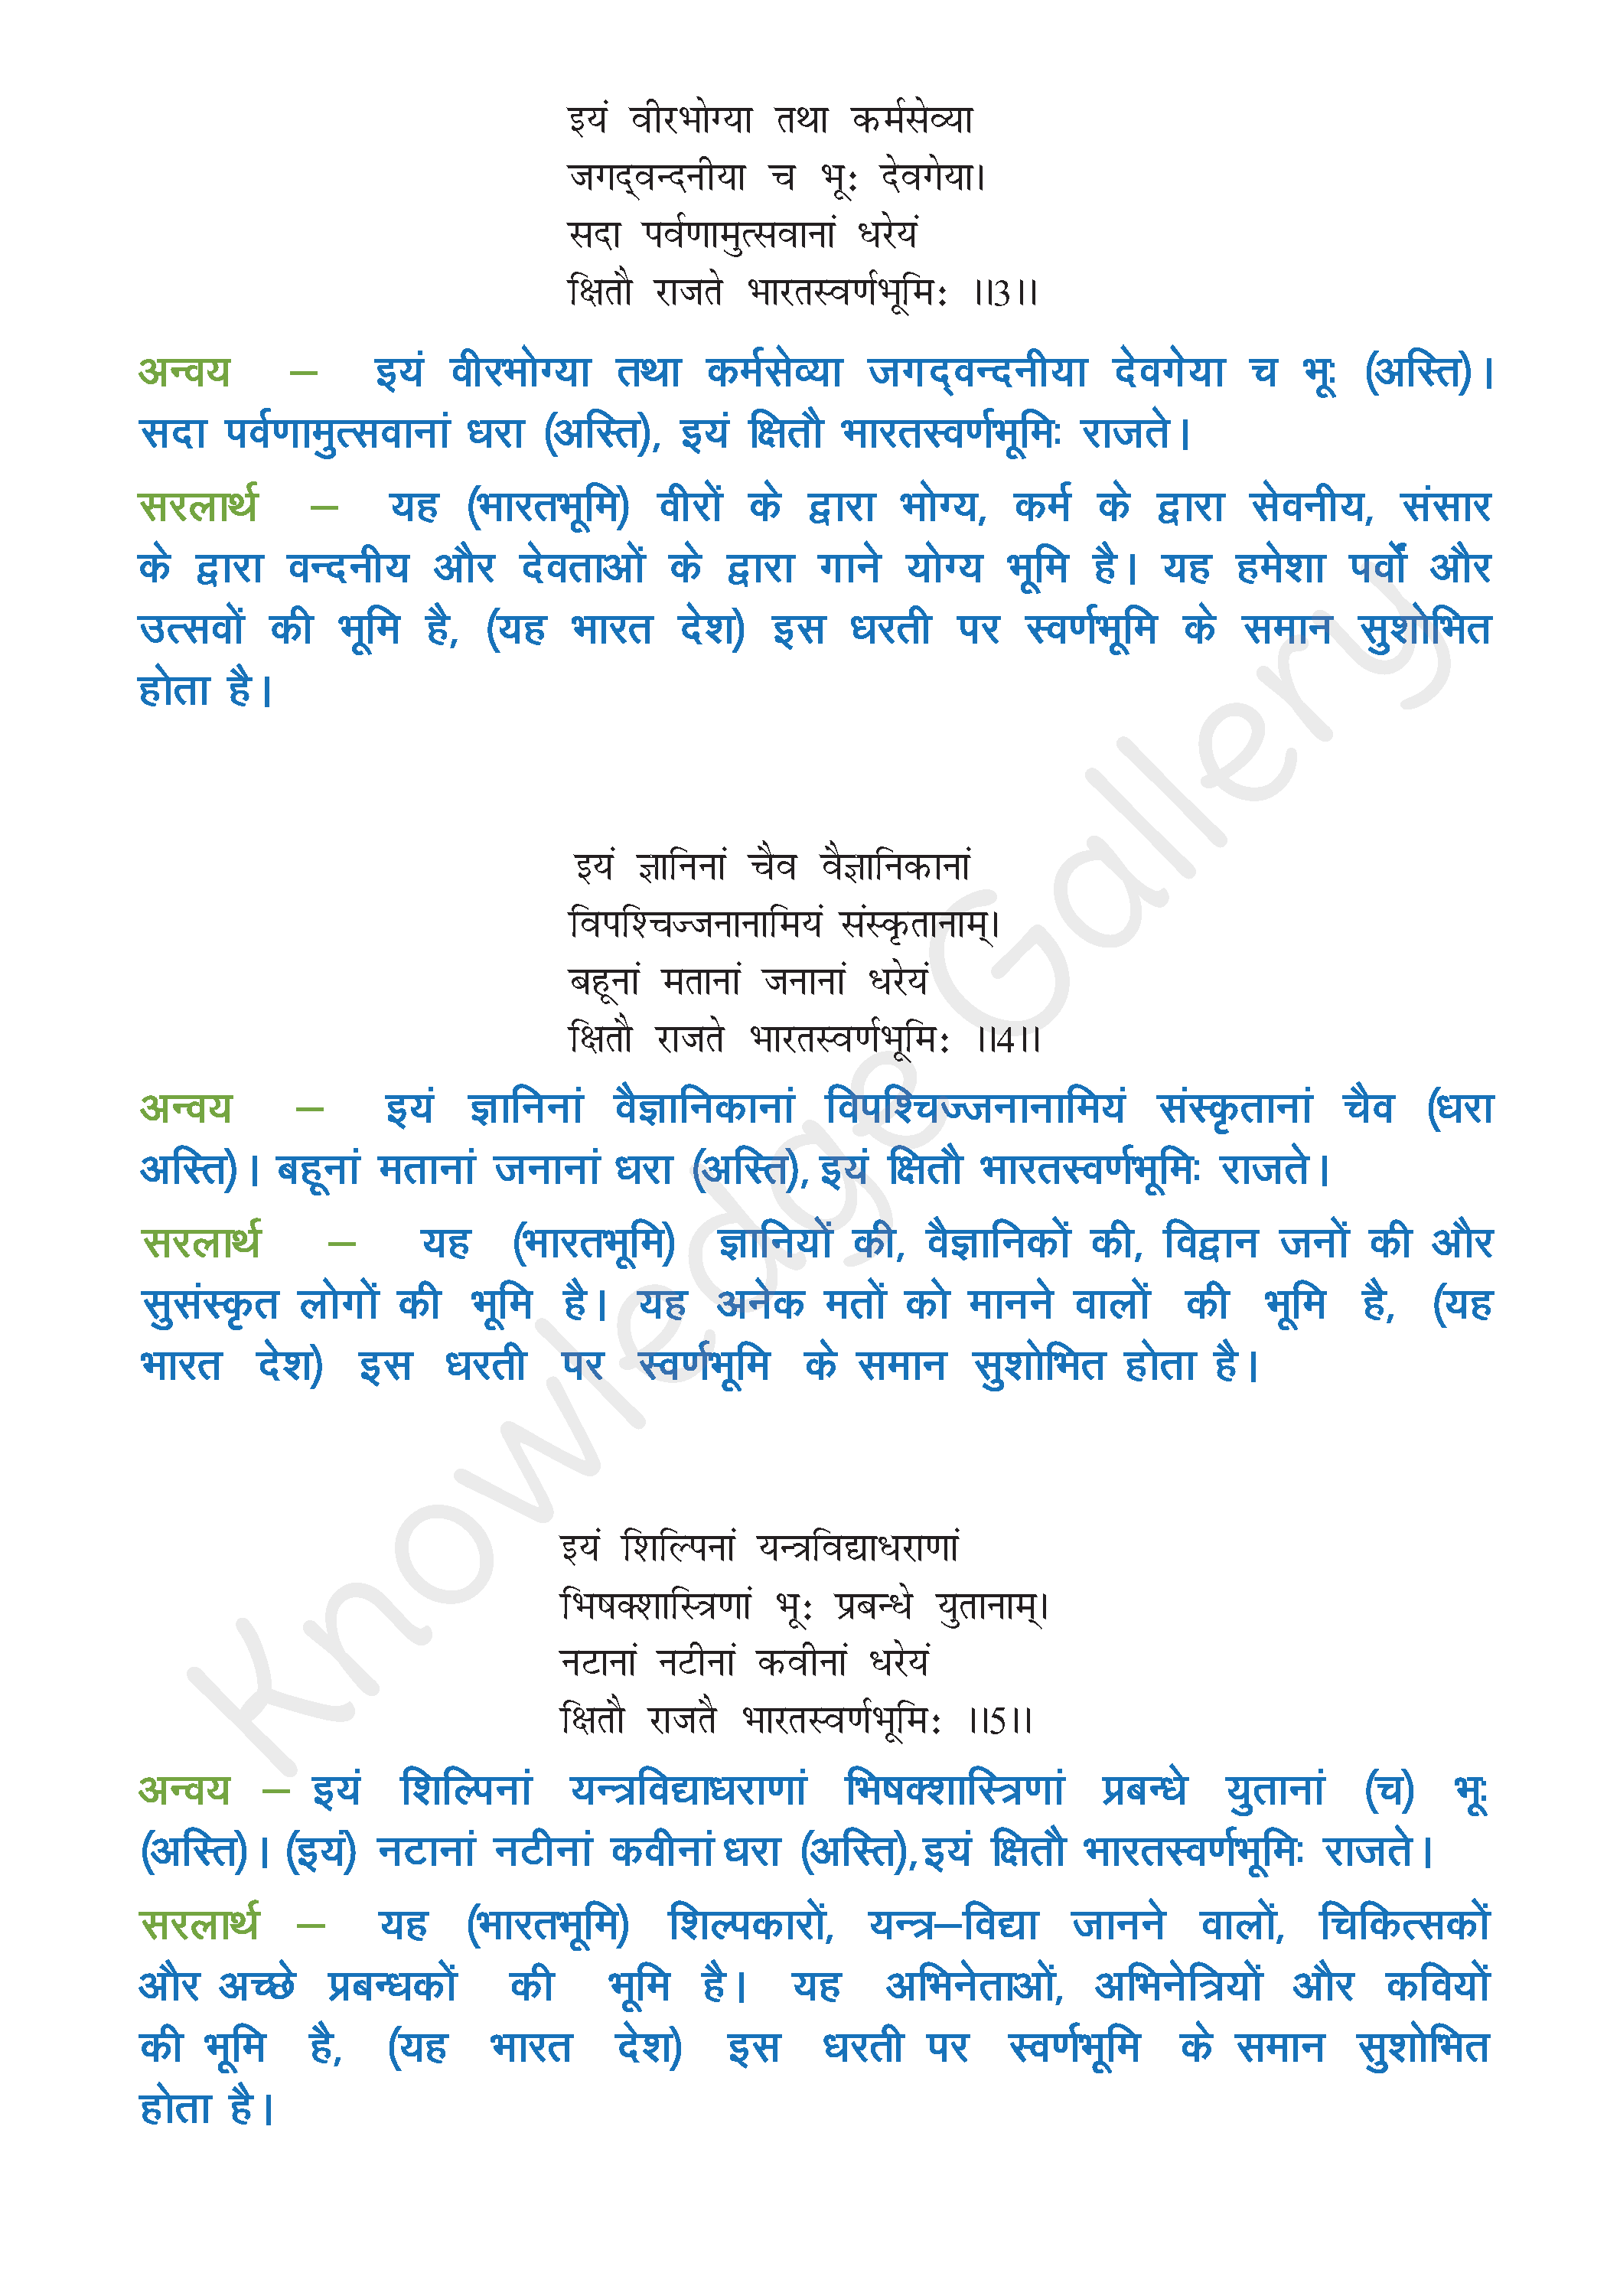 NCERT Solution For Class 8 Sanskrit Chapter 13 part 2